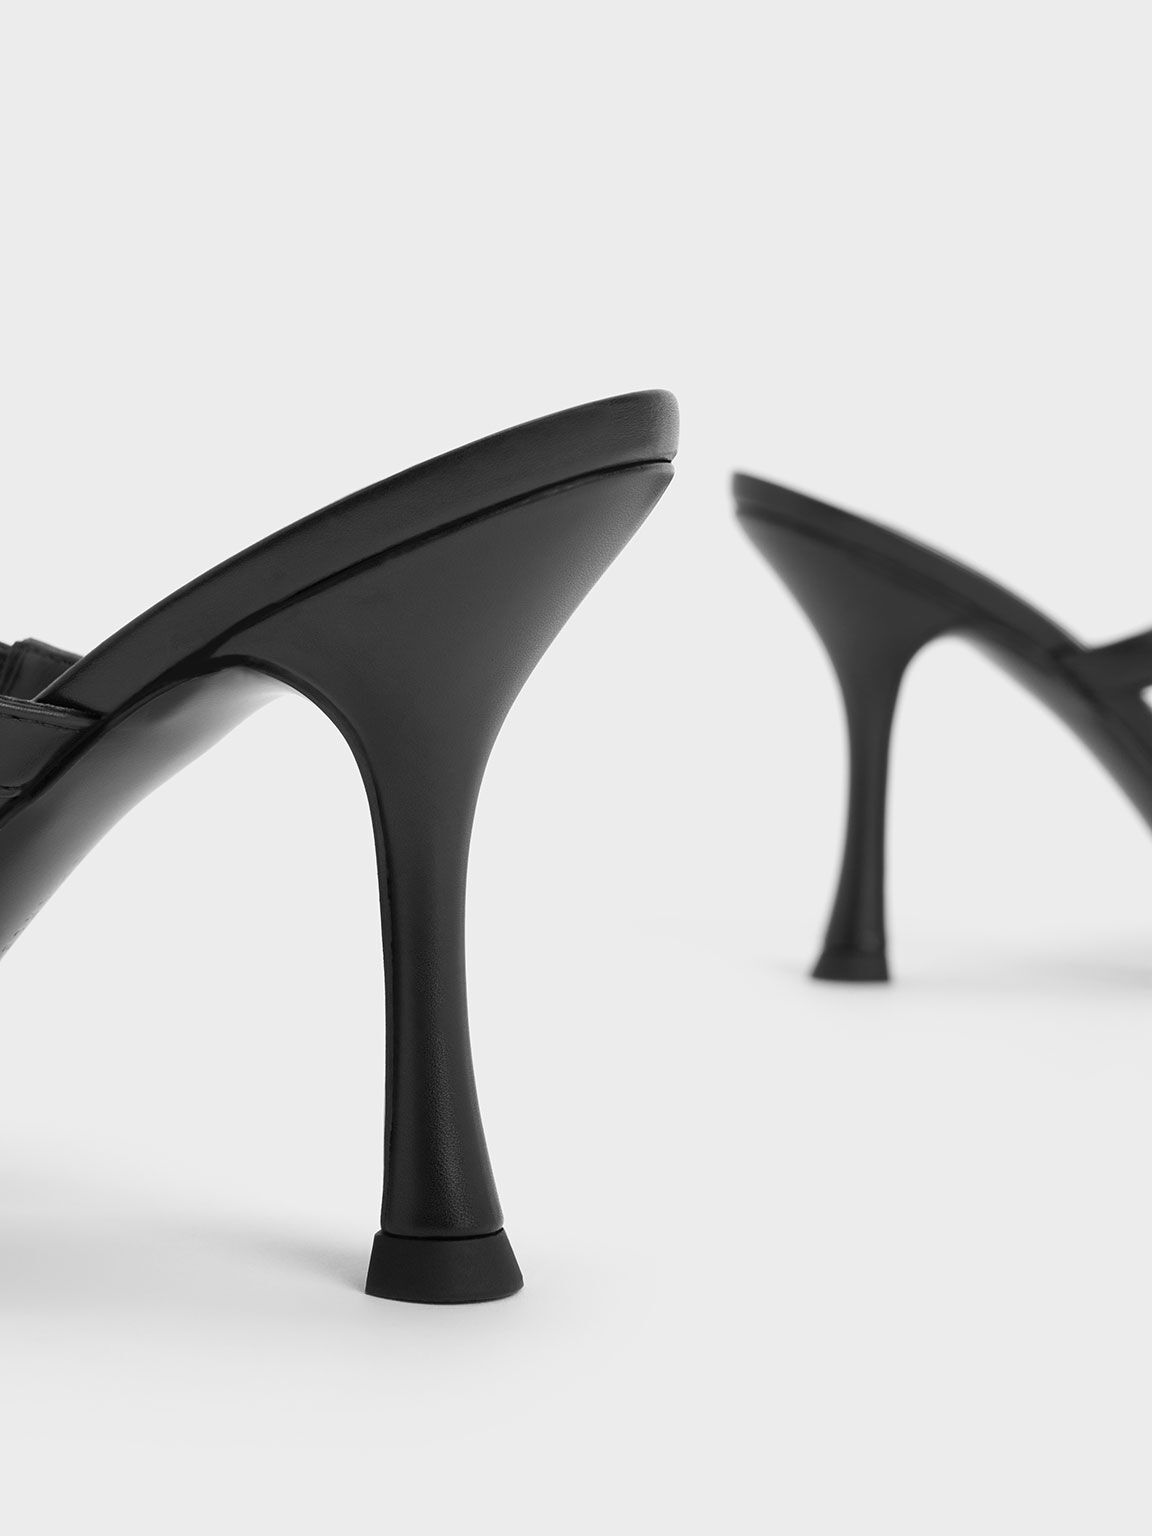 حذاء ميول عالي الكعب مع شريط مزين بسلسلة, أسود, hi-res